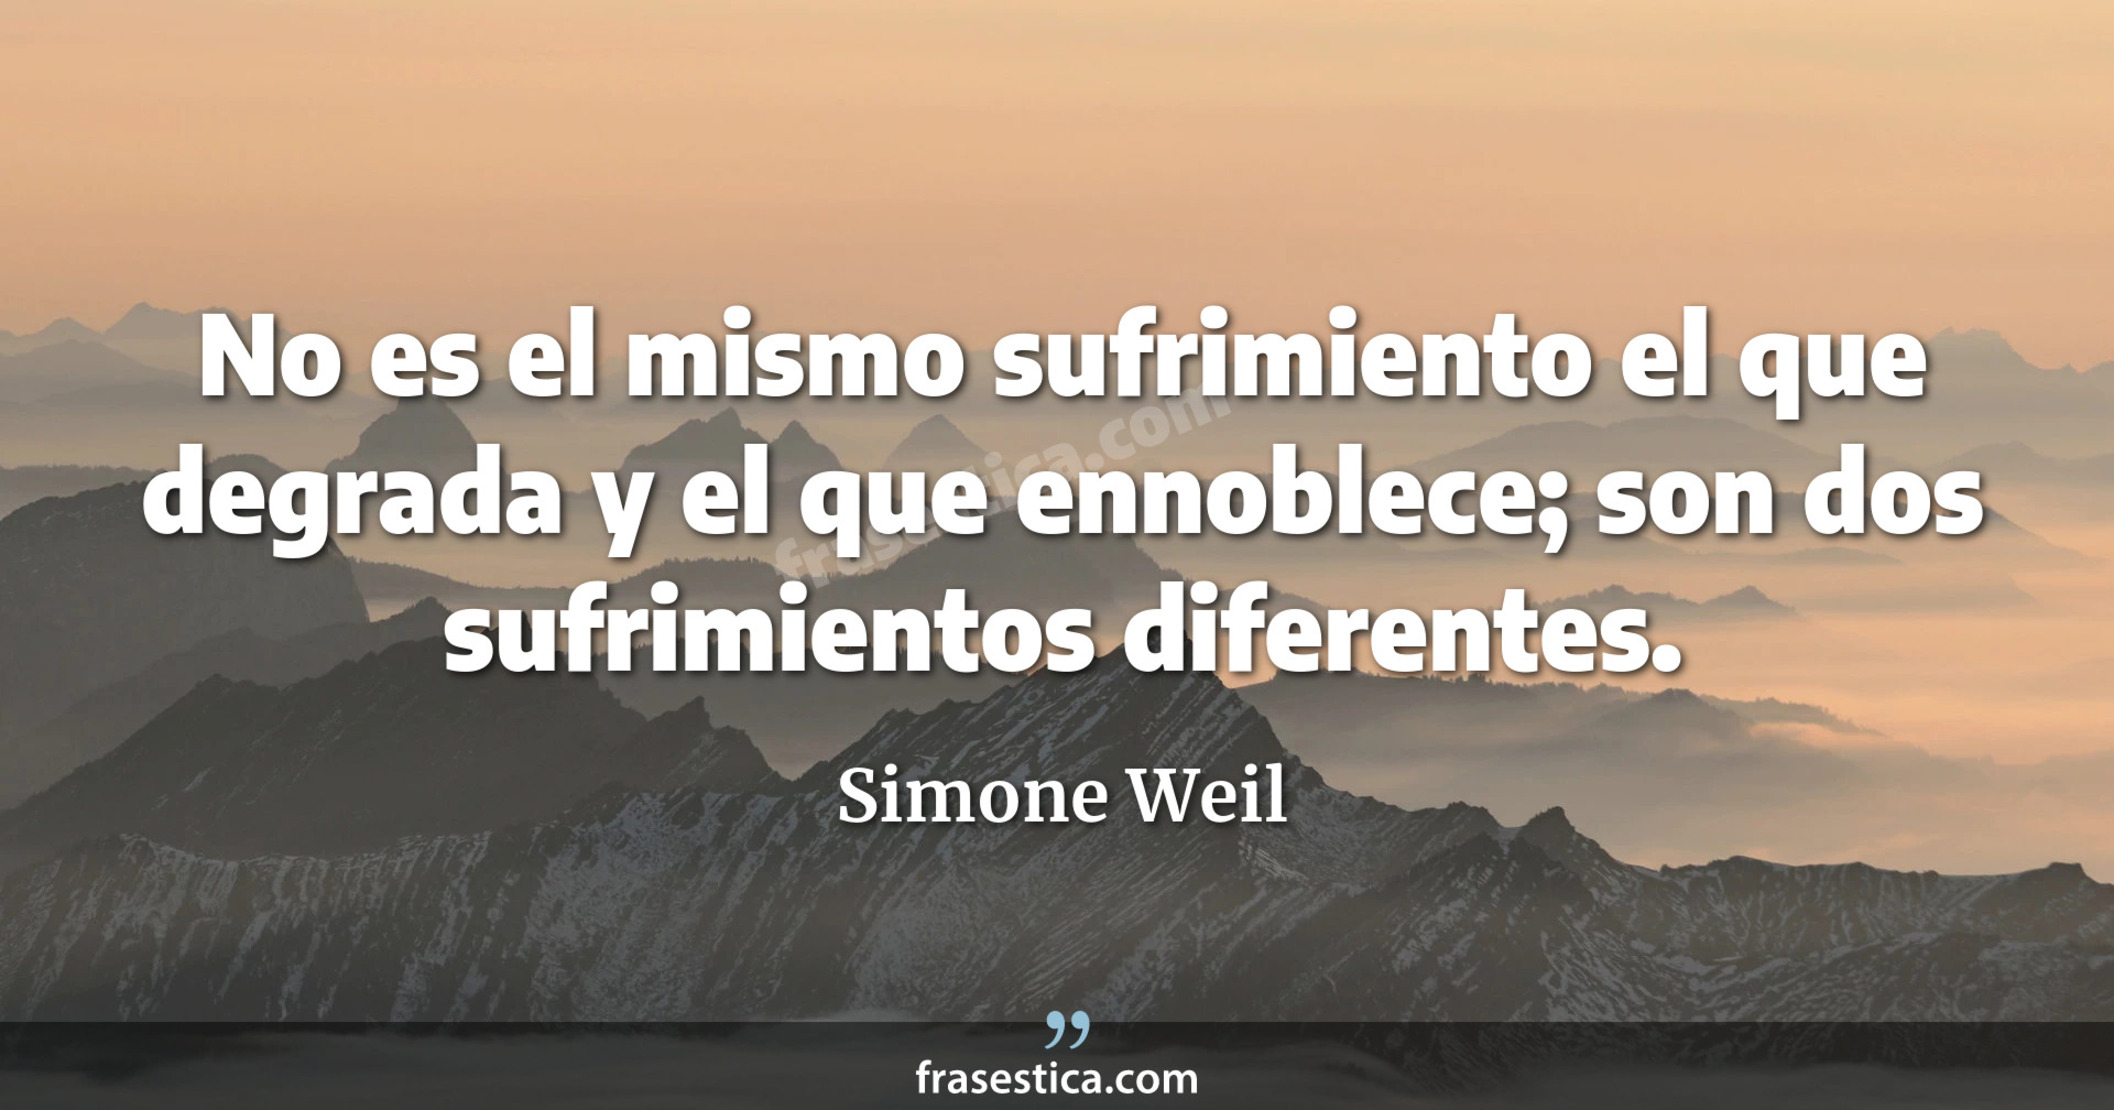 No es el mismo sufrimiento el que degrada y el que ennoblece; son dos sufrimientos diferentes. - Simone Weil